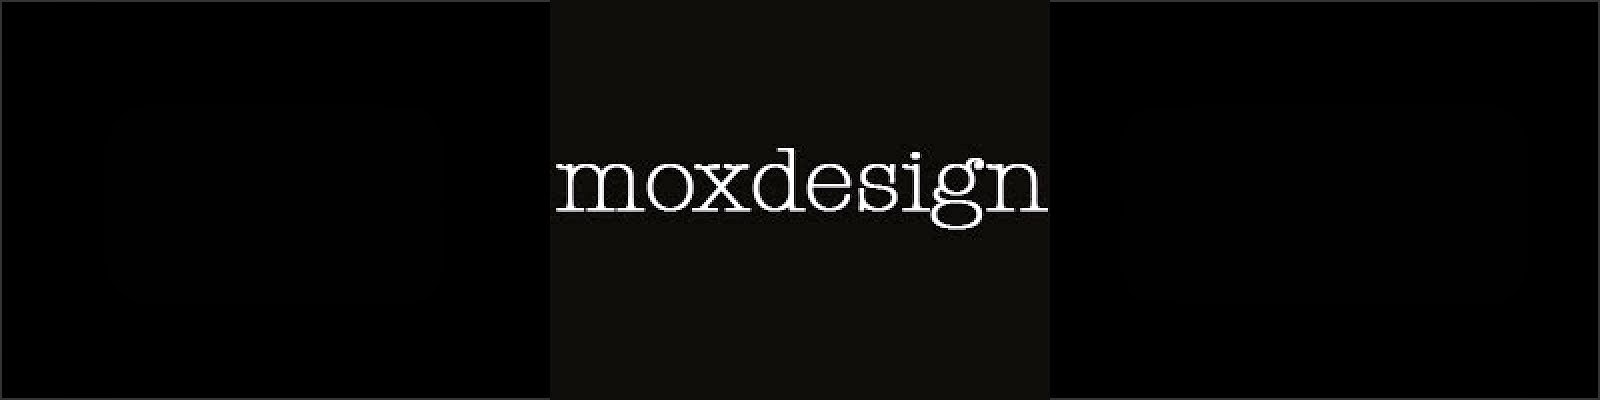 moxdesign